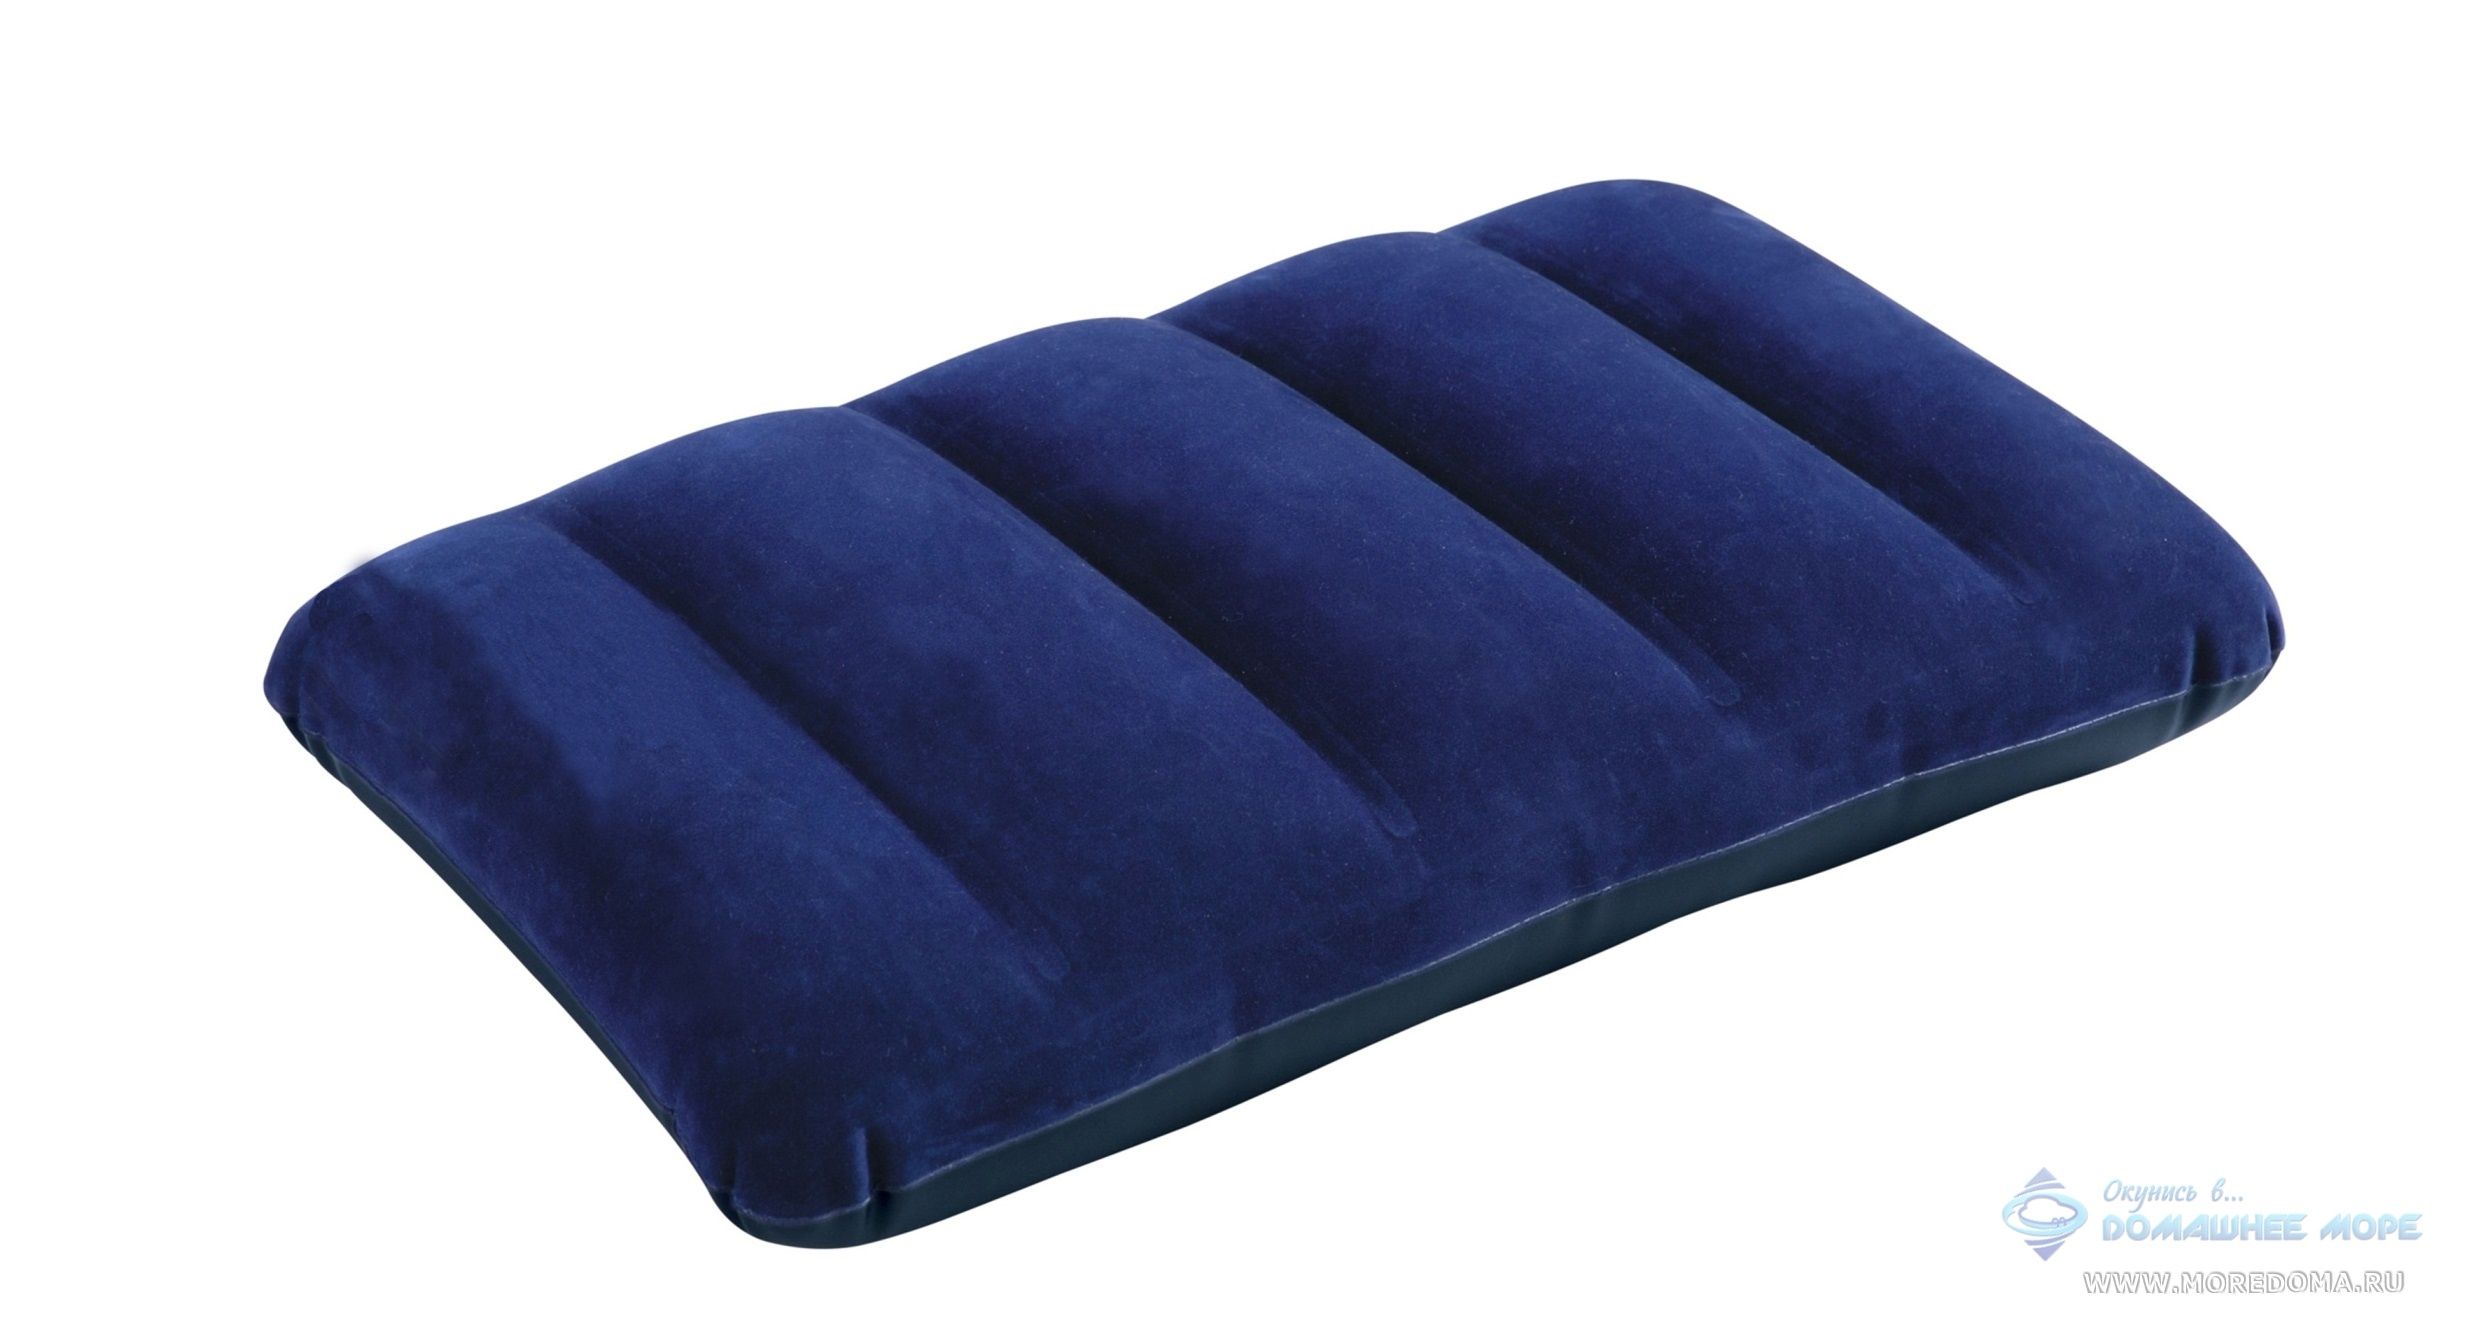 Подушка INTEX надувная 43 х 28 х 9 см, цвет синий ; артикул 68672